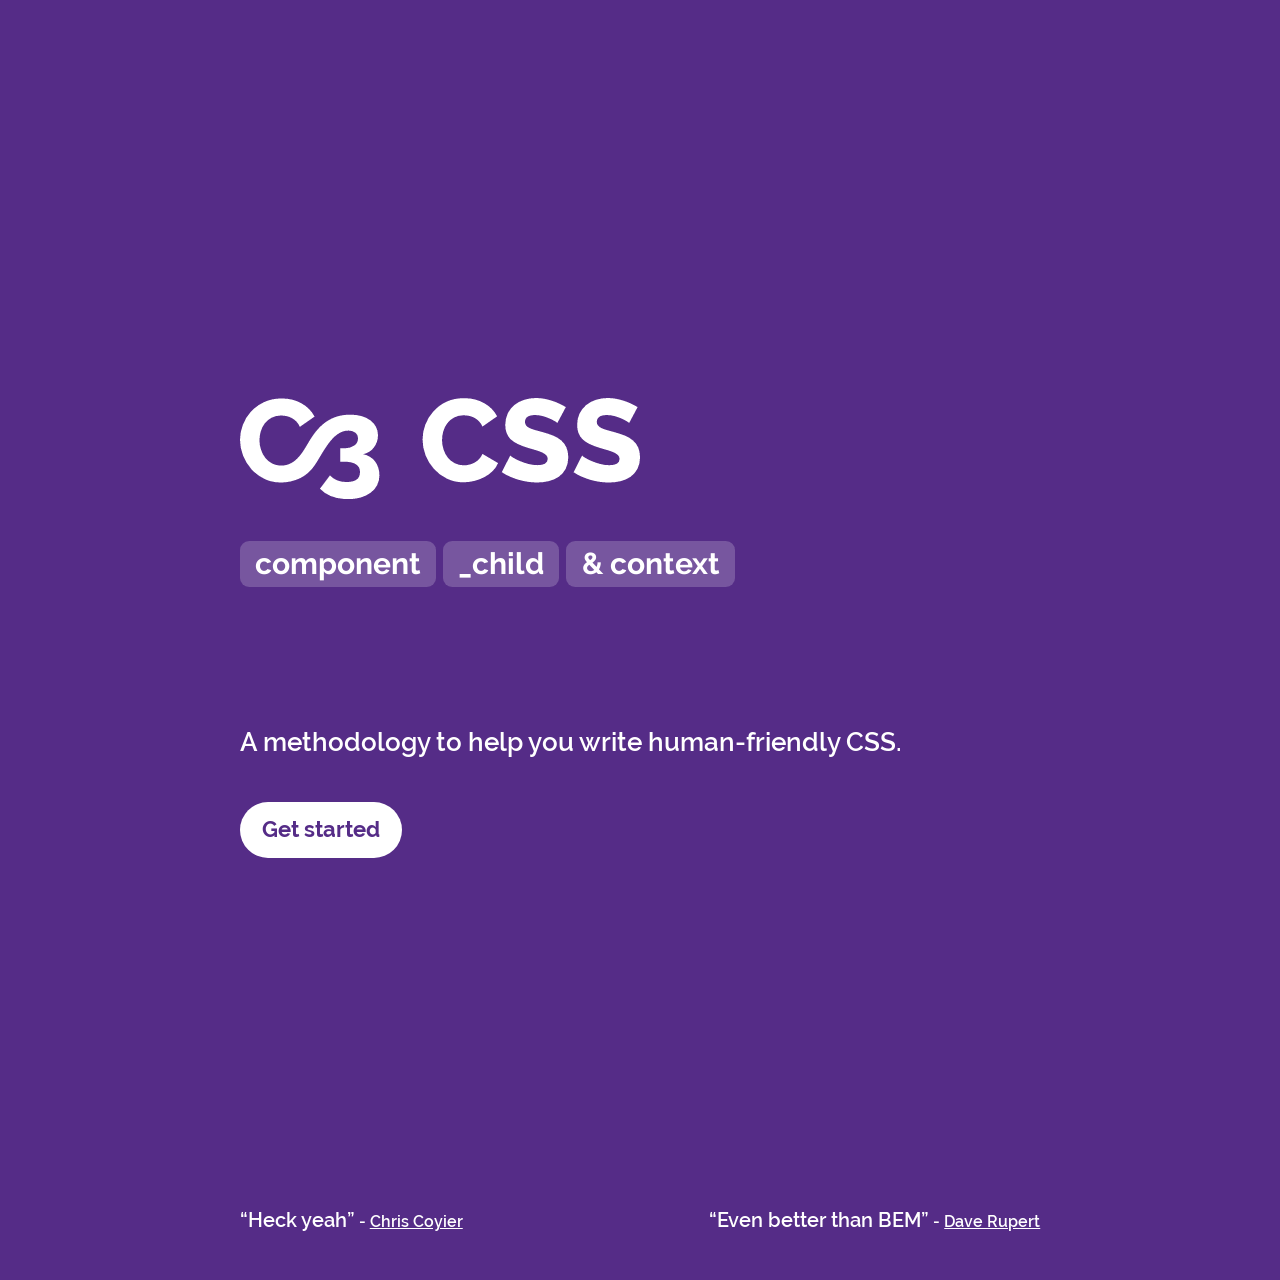 Screenshot of C3 CSS website